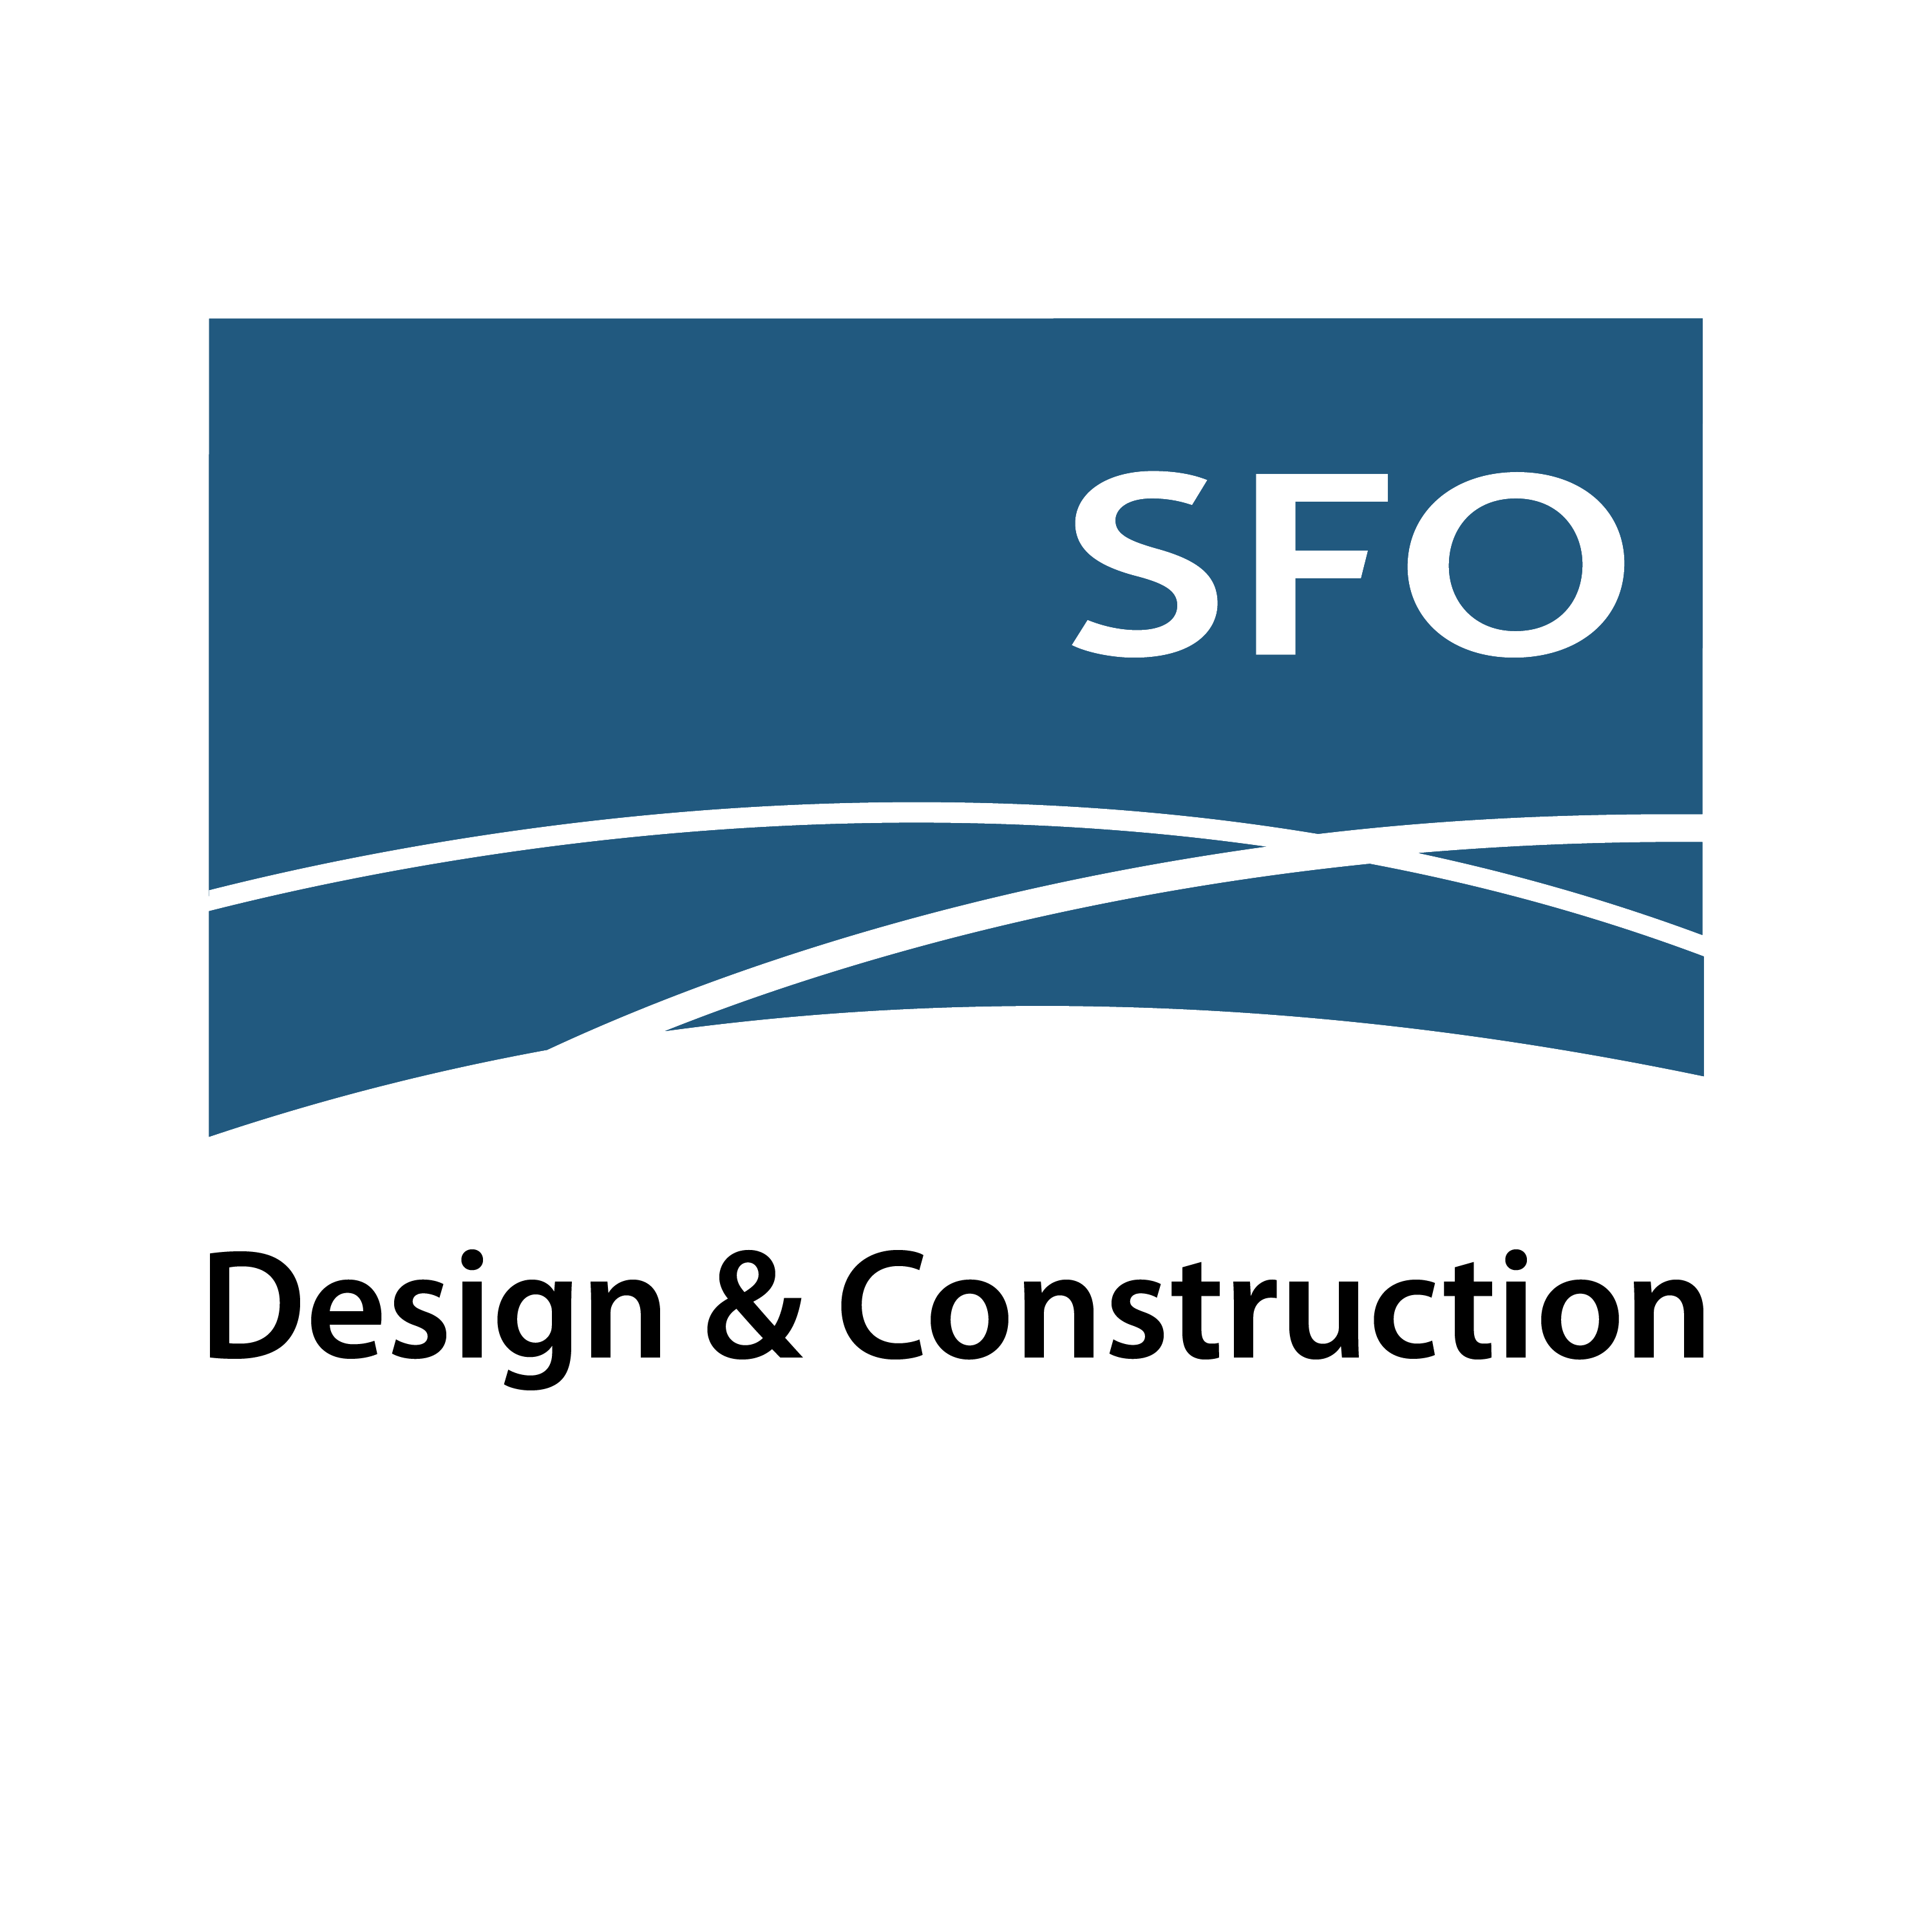 San Francisco Airport (Construction) logo